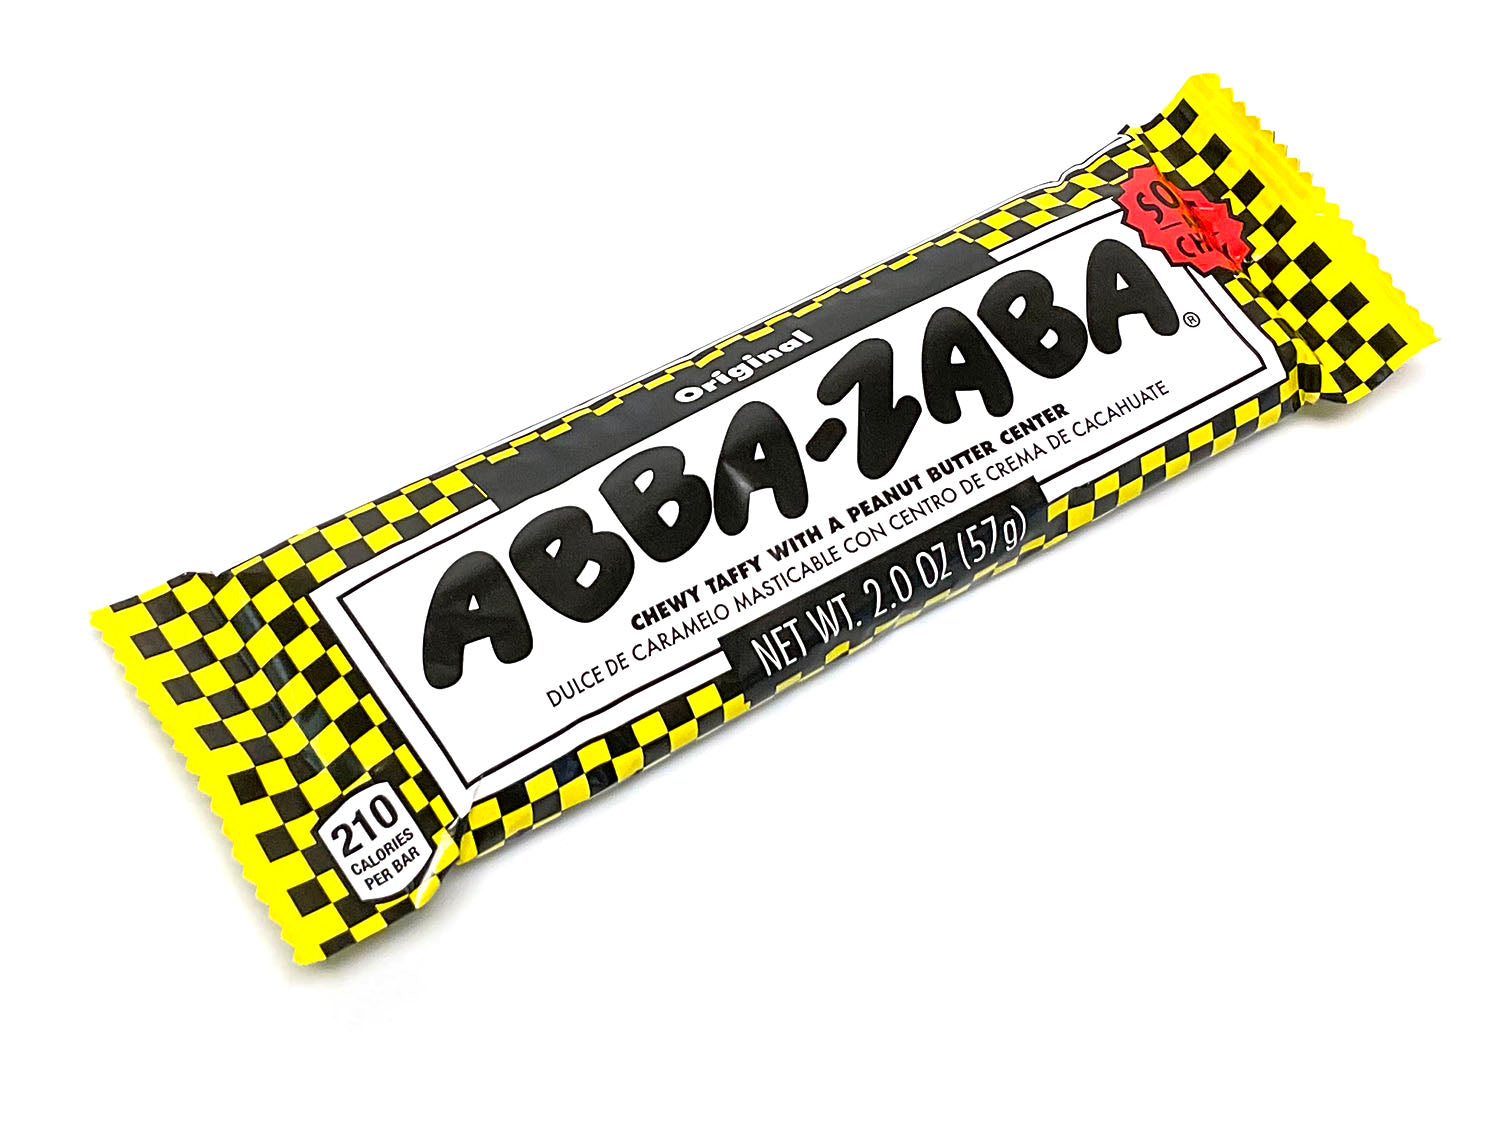 Abba Zaba - 1.8 oz bar